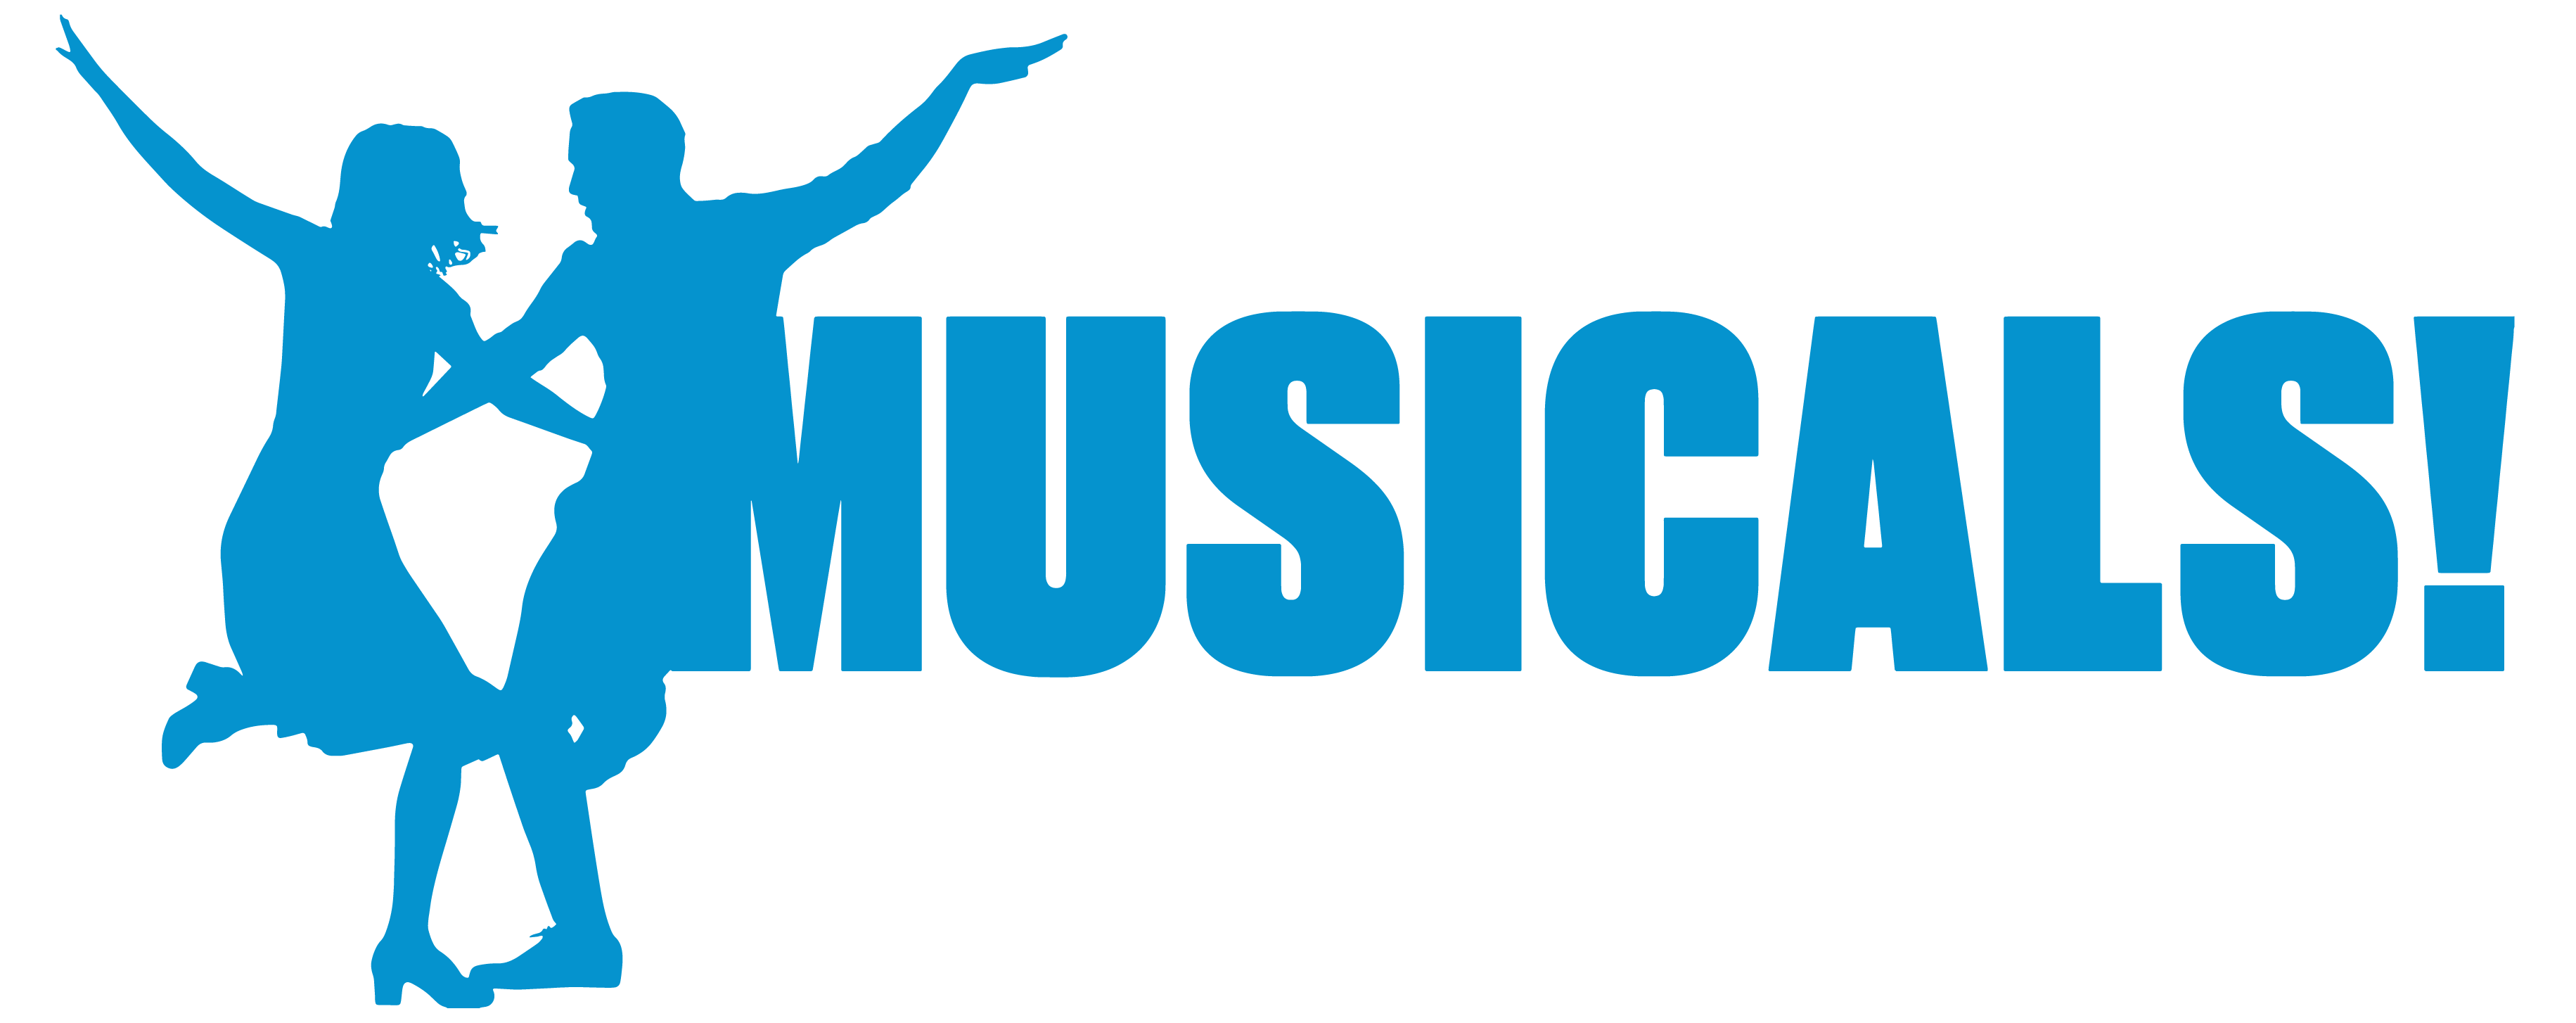 BFI Musicals Logo